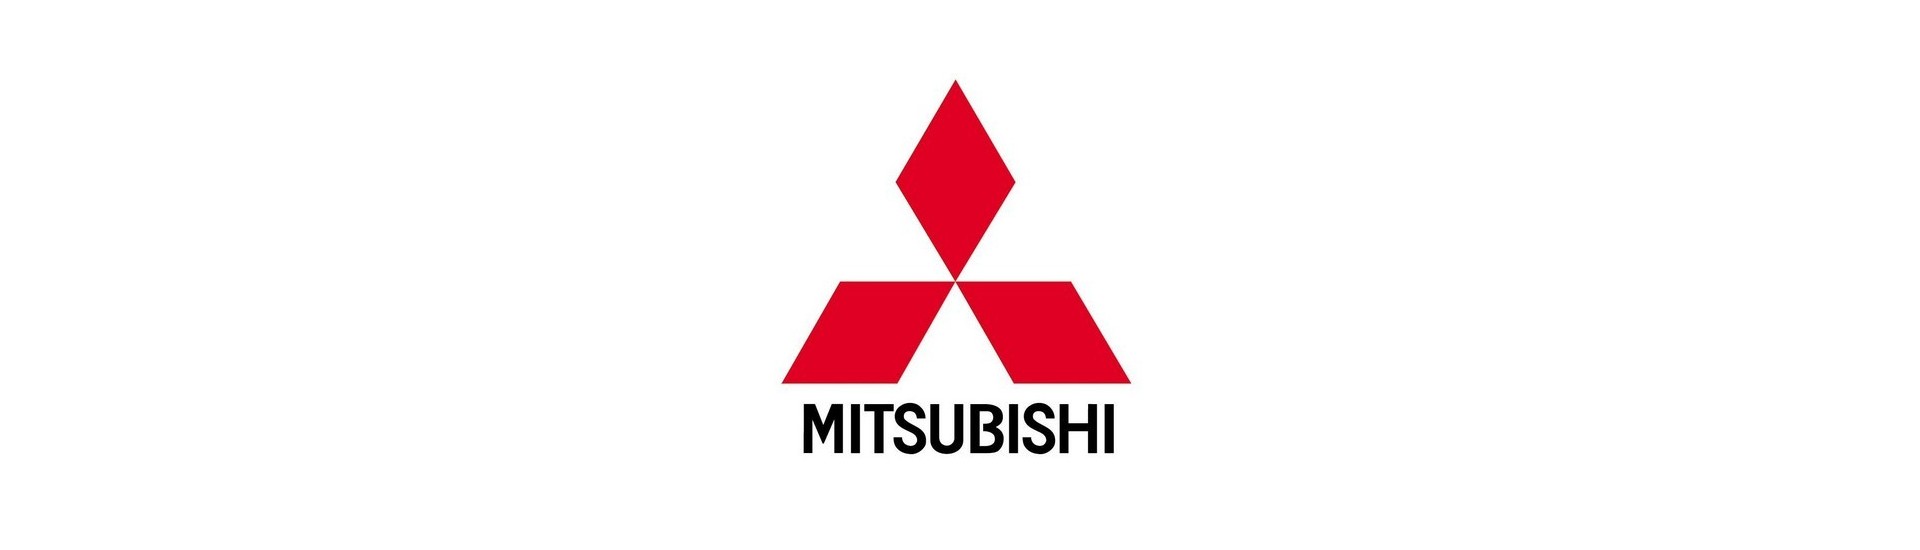 Gratis motoravloppsplugg till bästa pris Mitsubishi